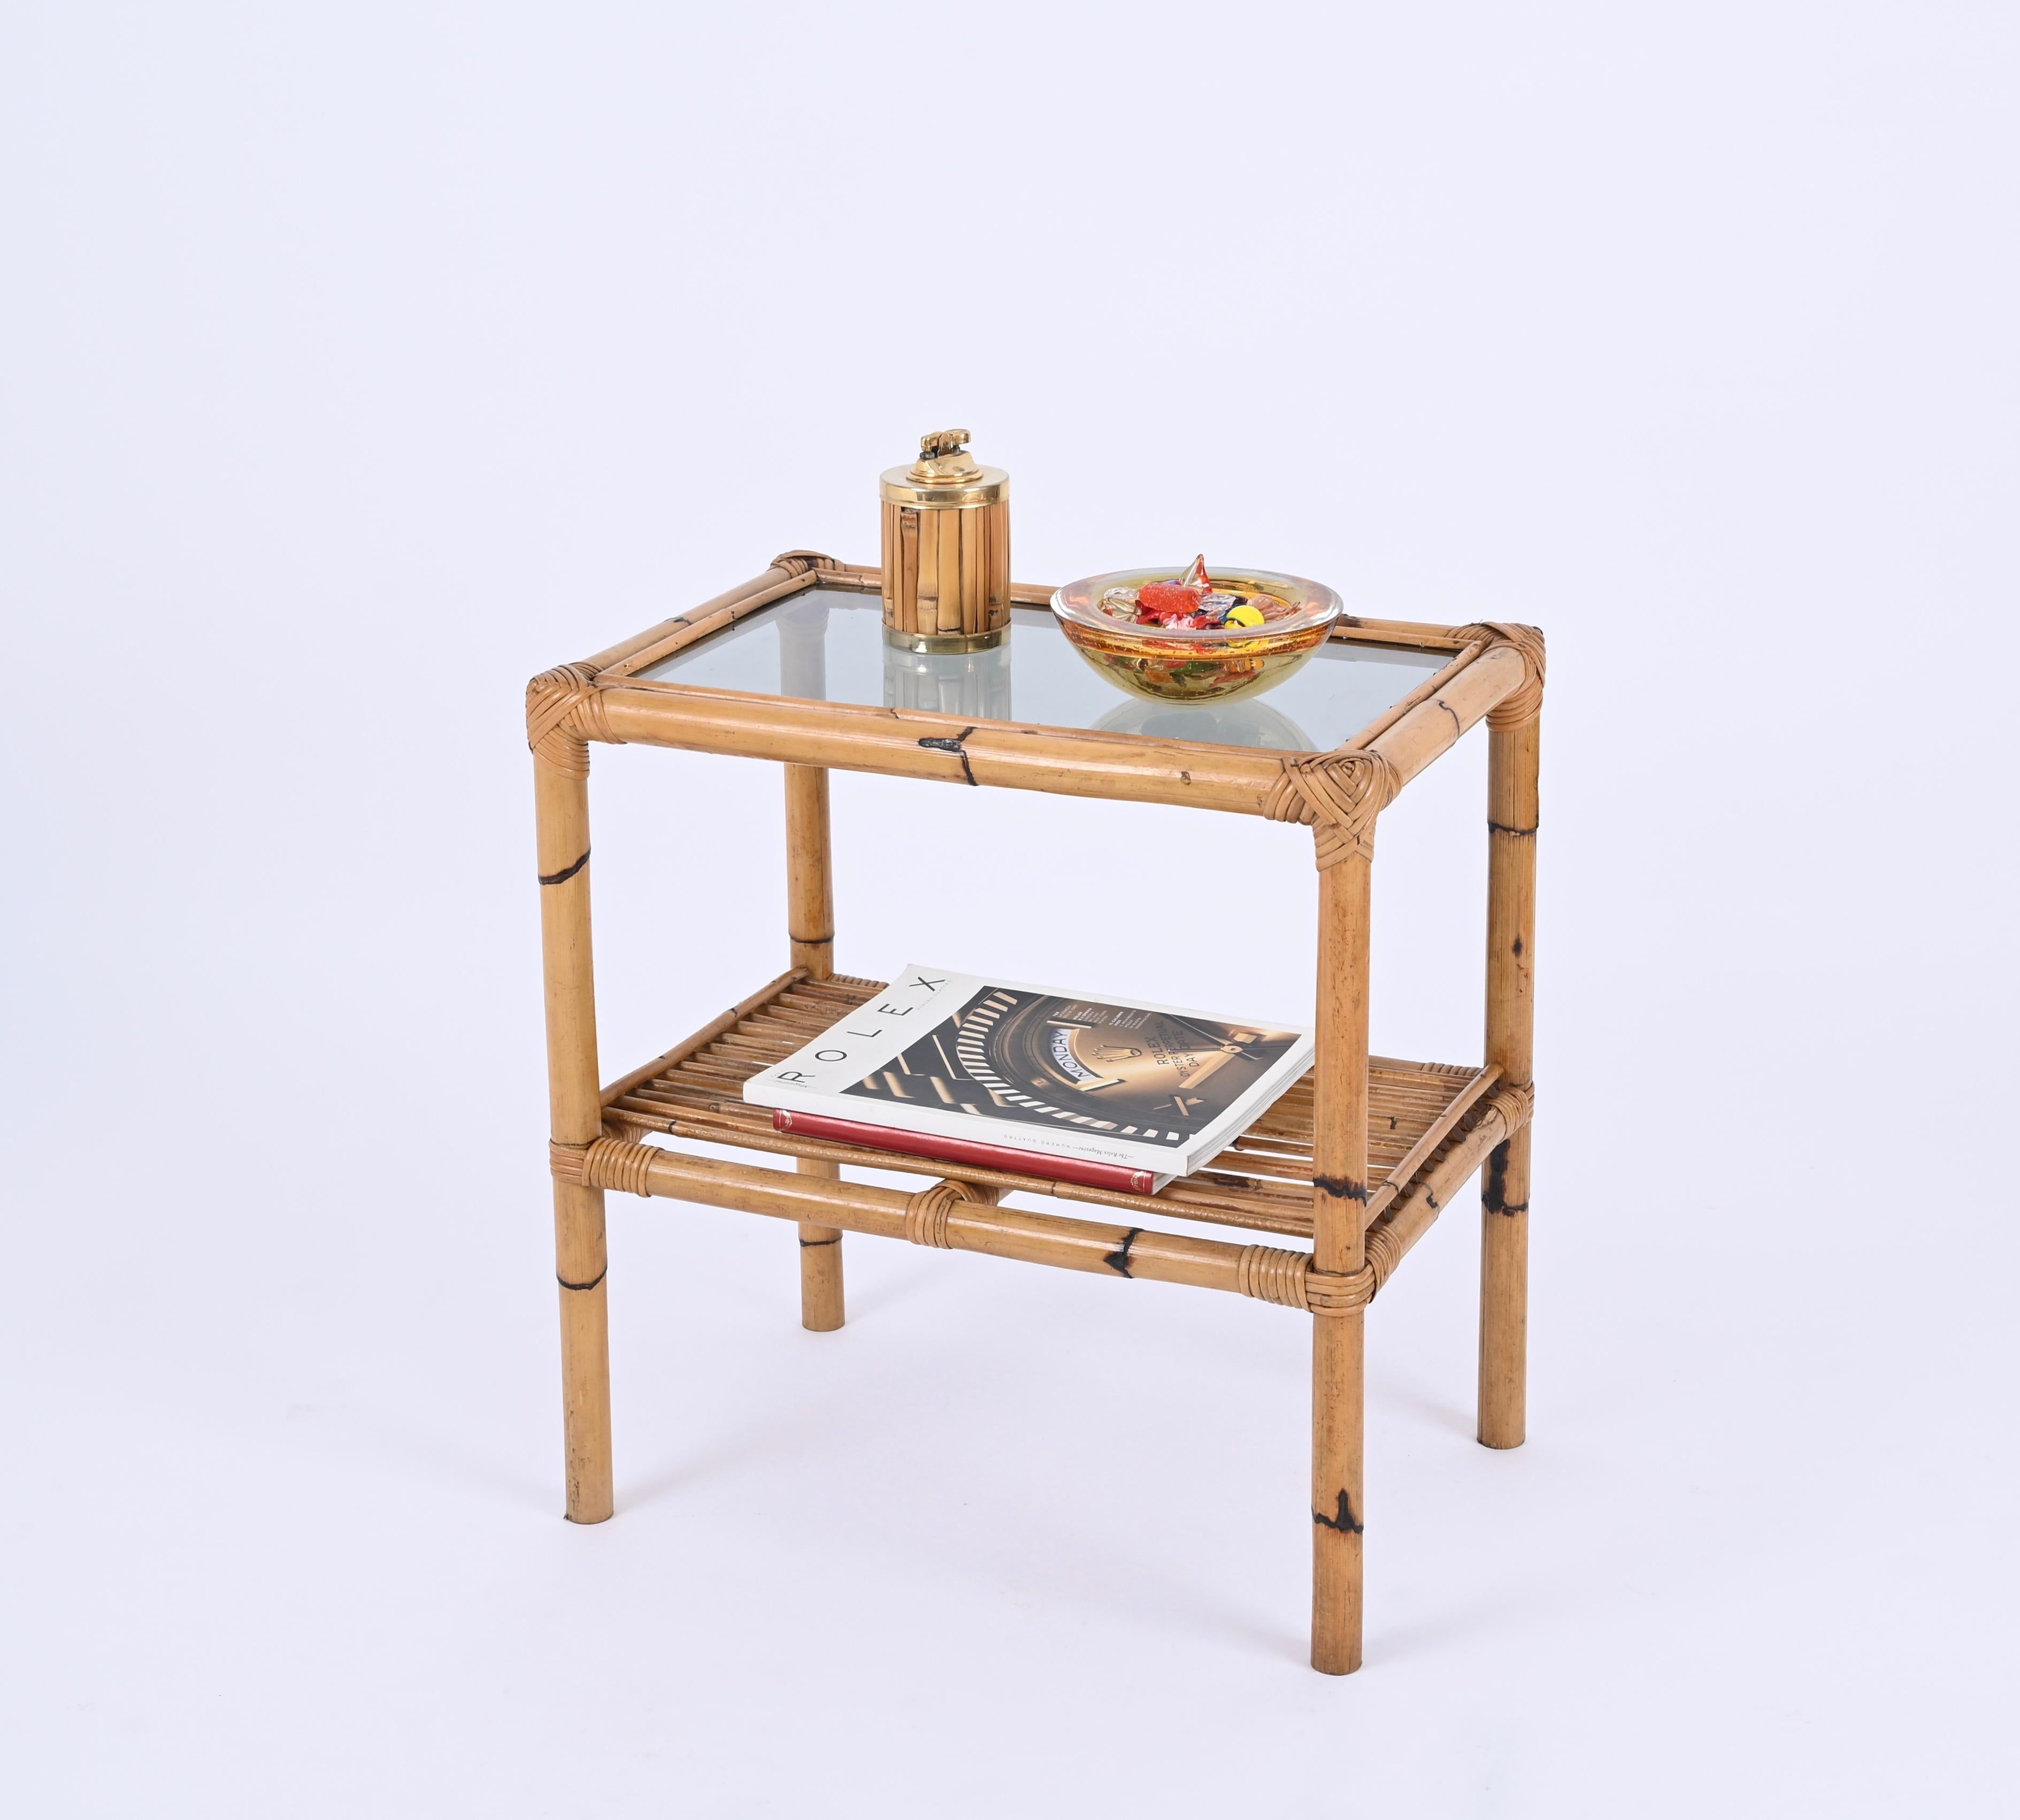 Wunderschöner Nachttisch oder Beistelltisch aus Bambus und geflochtenem Rattan mit Glasplatte. Dieser schöne zweistöckige Tisch wurde in den 1970er Jahren in Italien entworfen.

Dieses atemberaubende Stück ist vollständig aus Bambusrohren